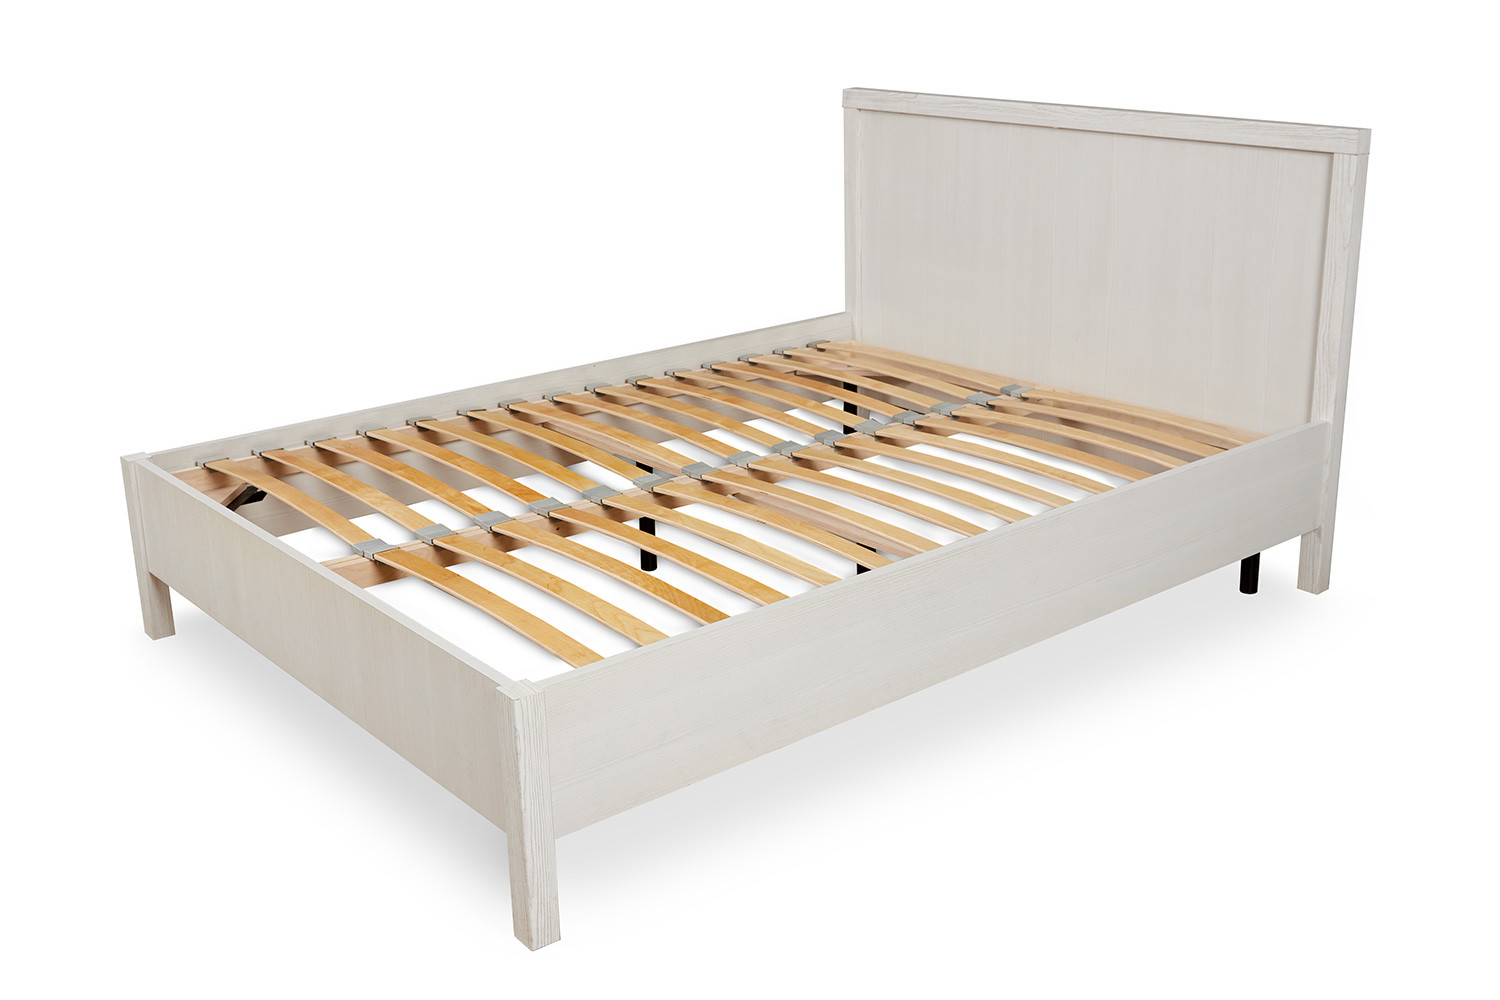 хофф кровать деревянная 160